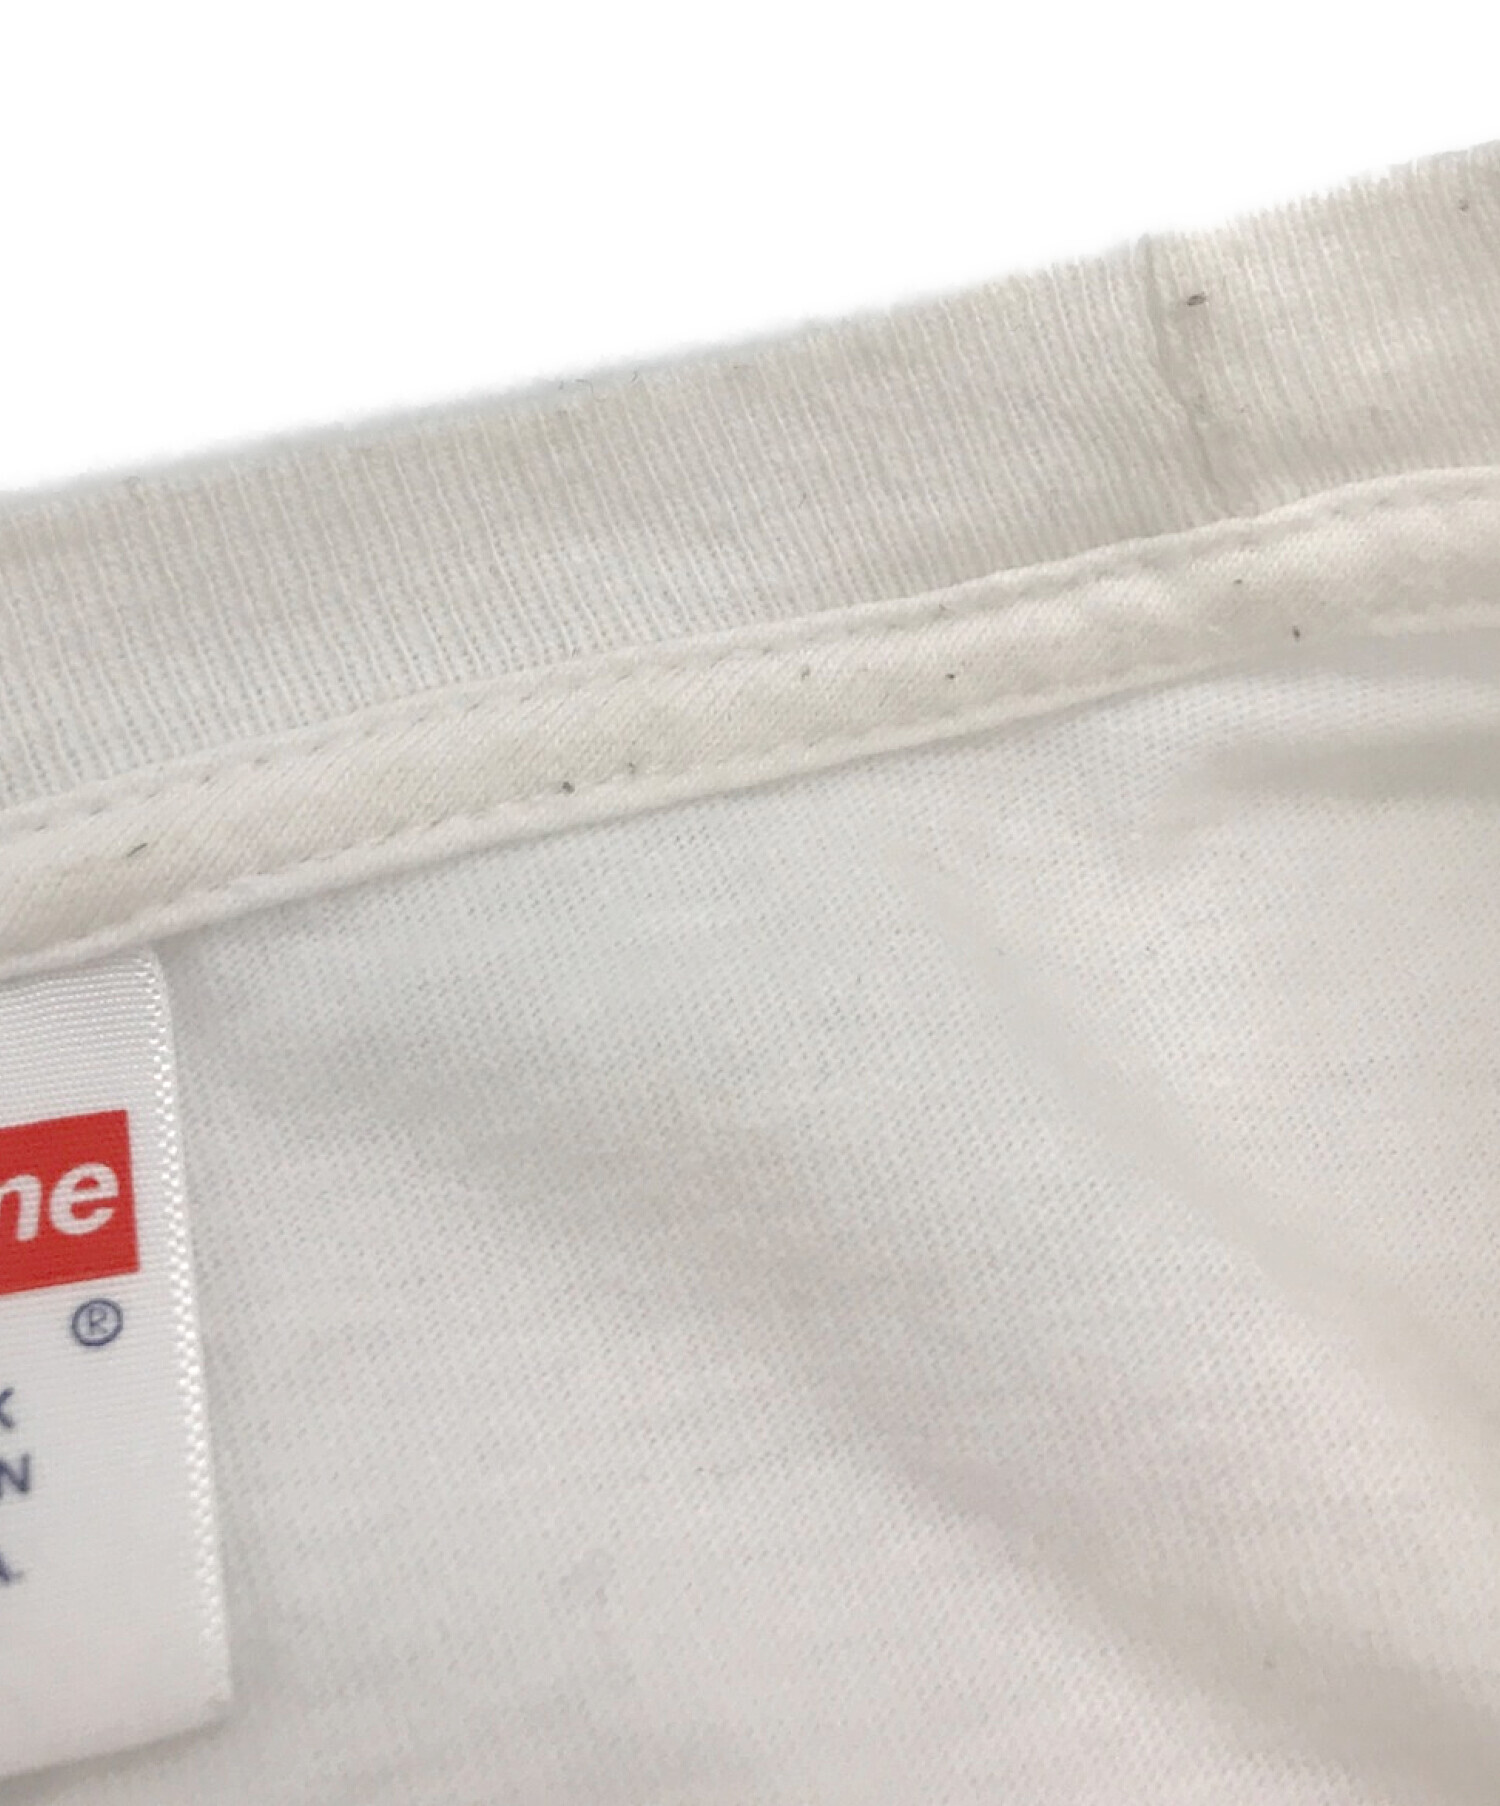 SUPREME×AKIRA (シュプリーム×アキラ) コラボバックプリントTシャツ ホワイト×ブラック サイズ:M